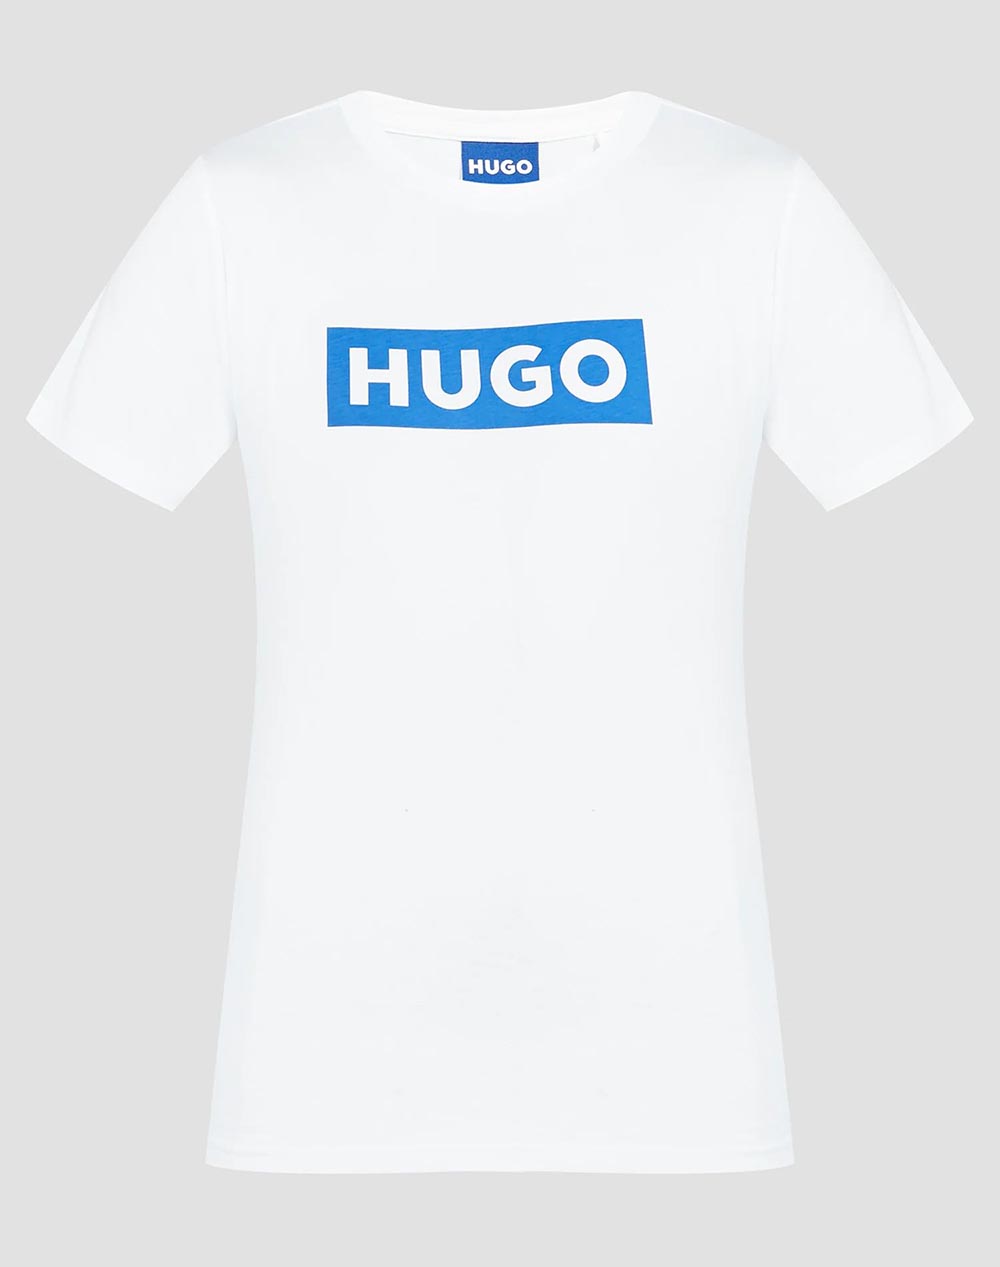 HUGO Classic Tee_B 10258021 01 50510772-100 White 3810AHBLU3400002_8880